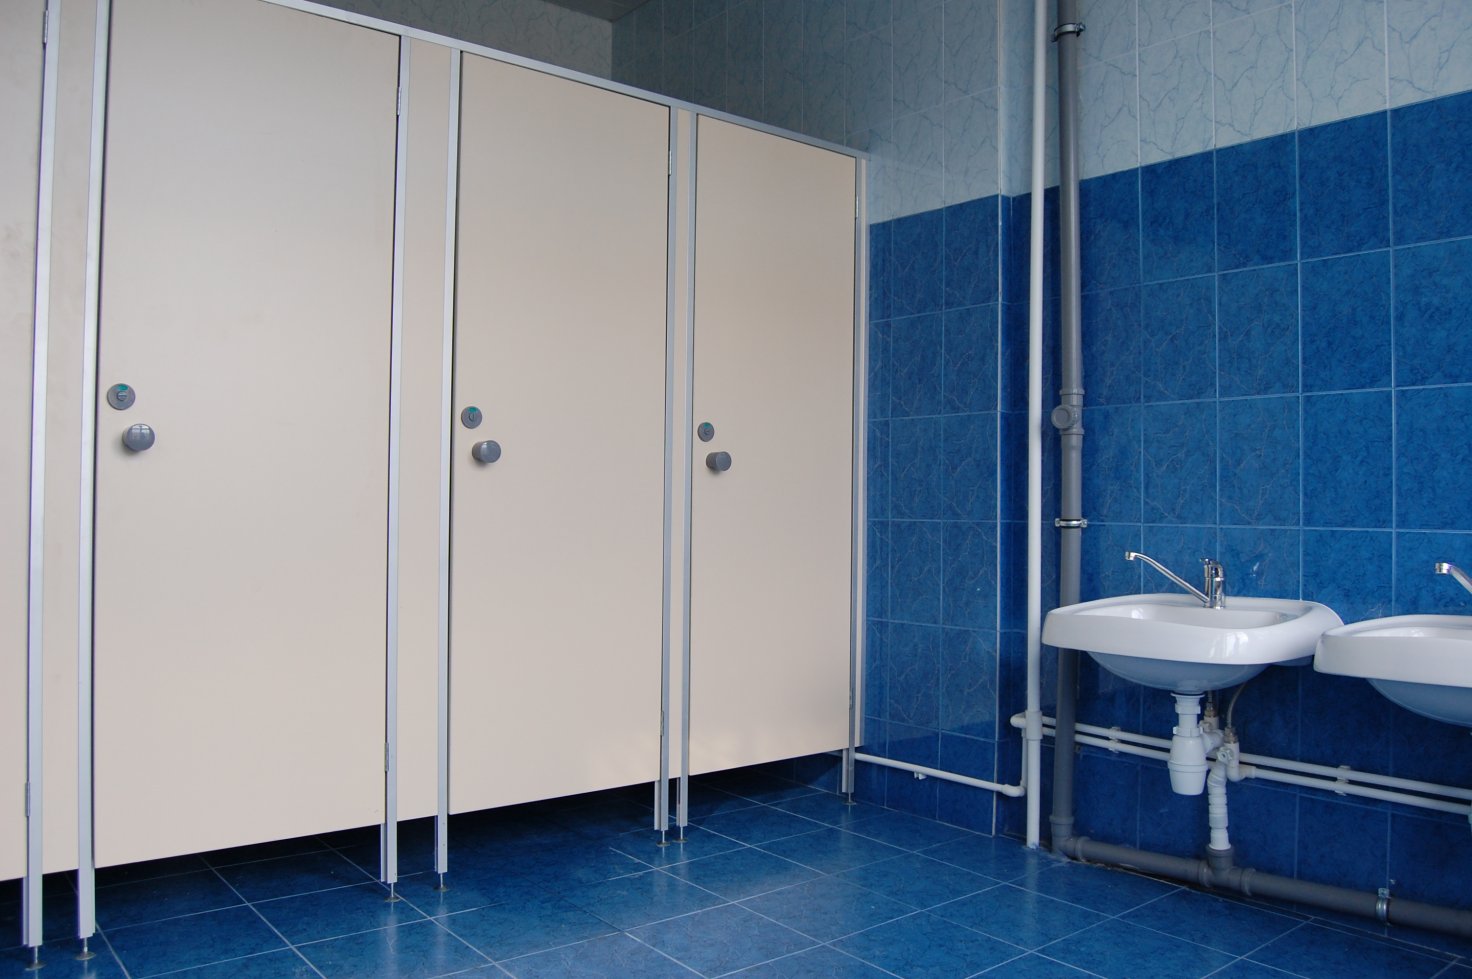 Два теплых общественных туалета установят в Якутске в ноябре